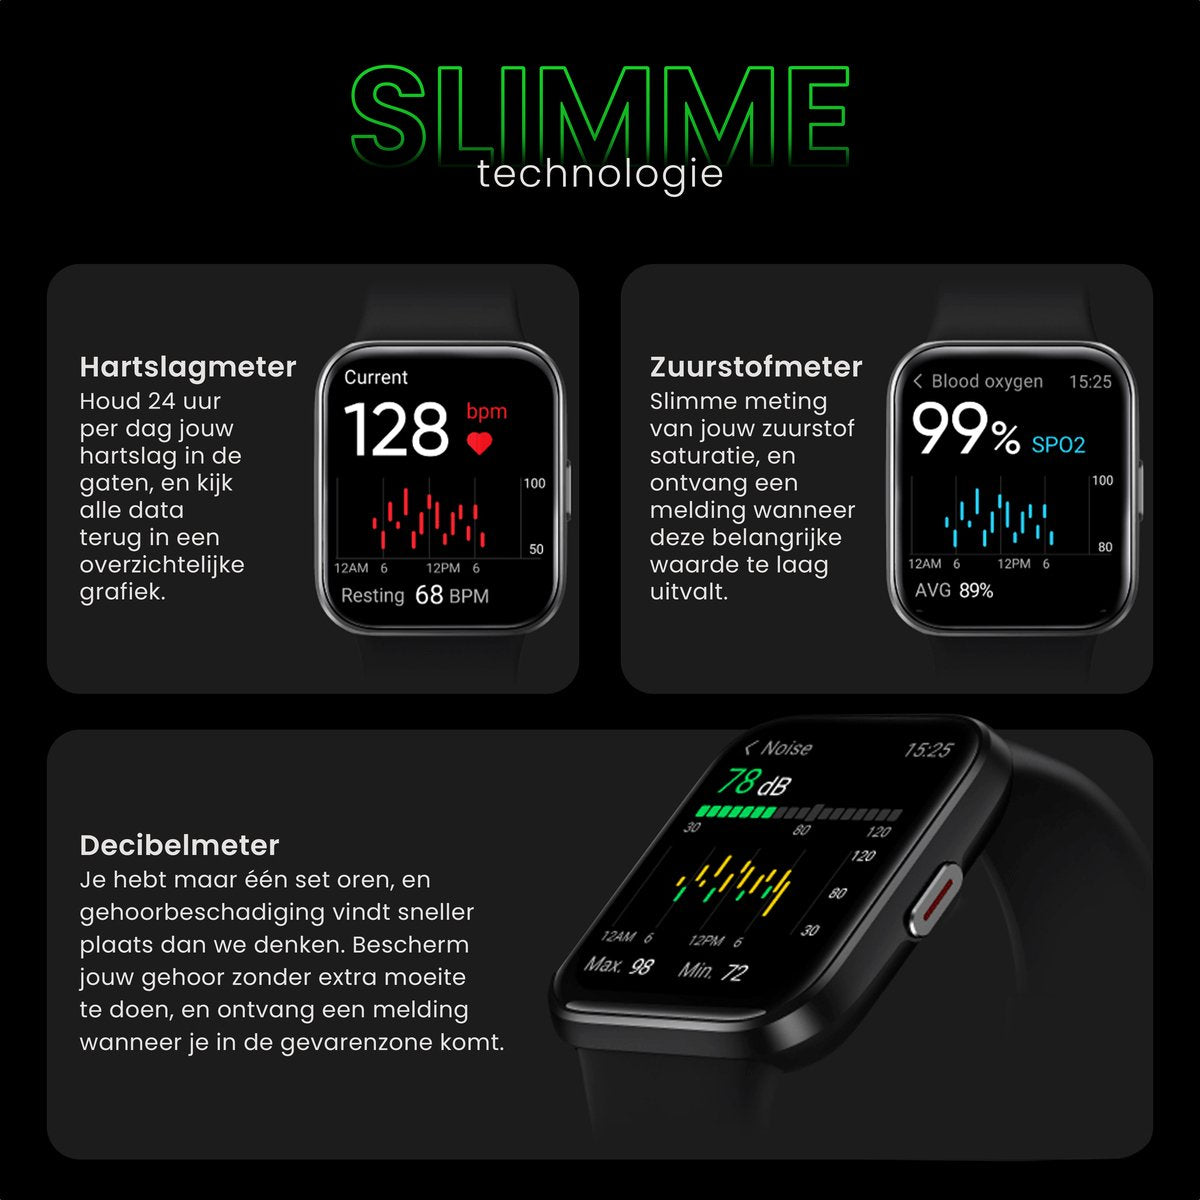 Maximize Smartwatch Zwart